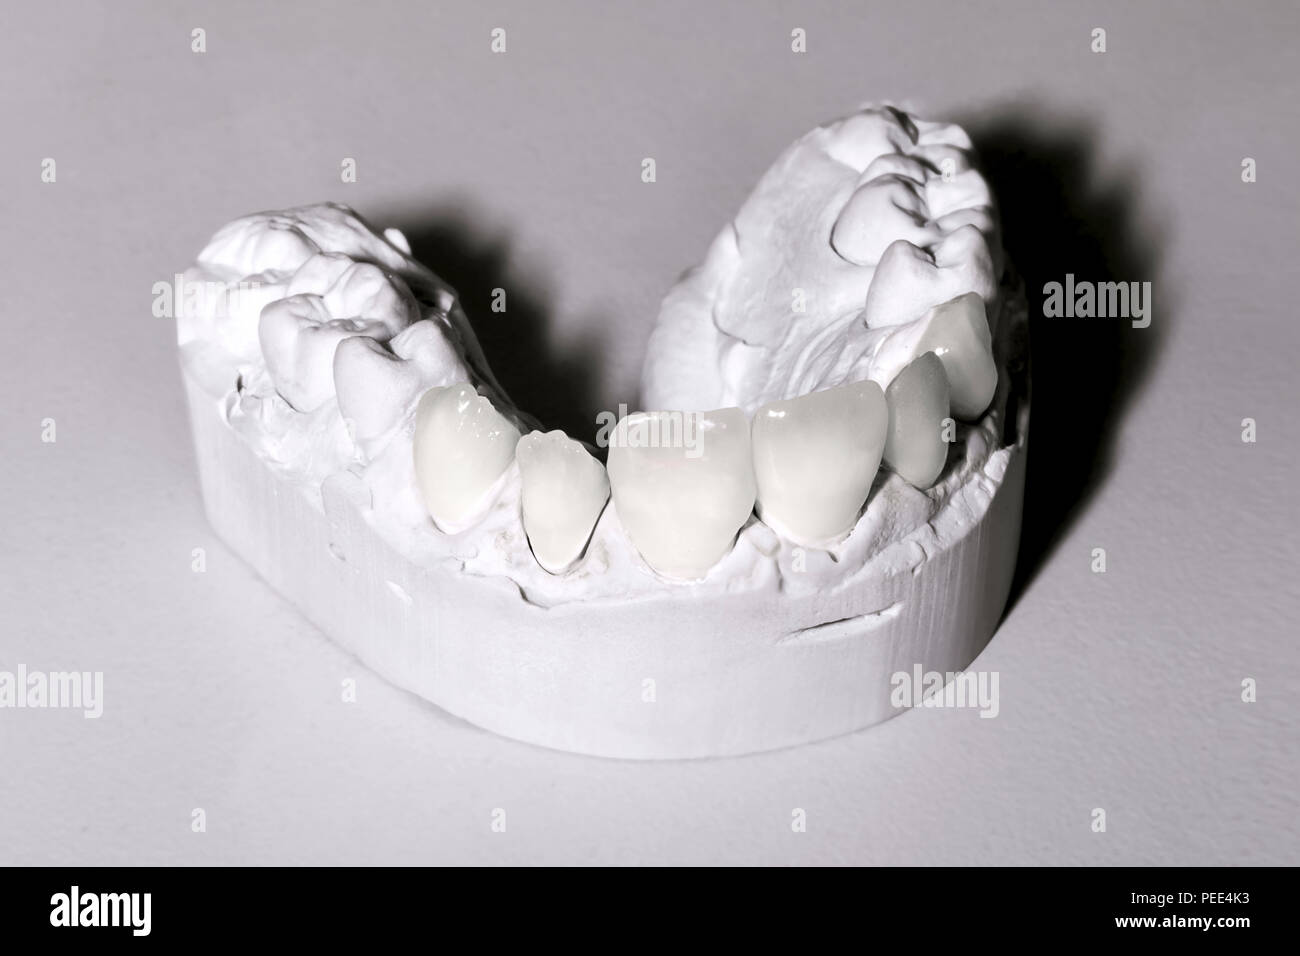 Foto di dental modelli in gesso sul tavolo Foto Stock